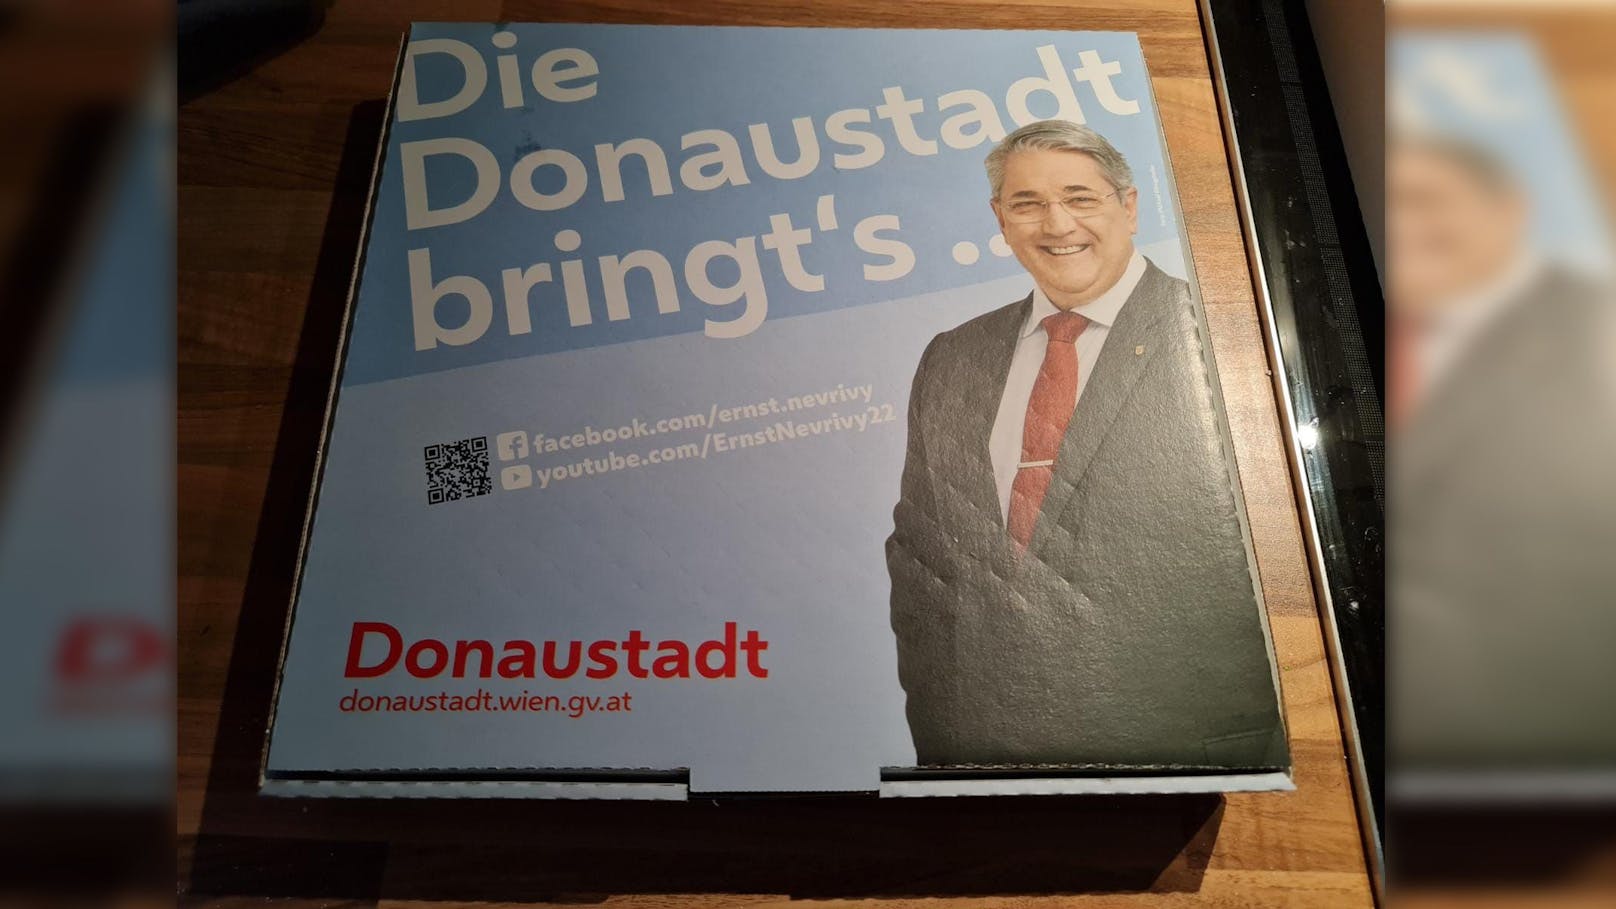 In der Donaustadt sind diese Pizza-Kartons im Umlauf